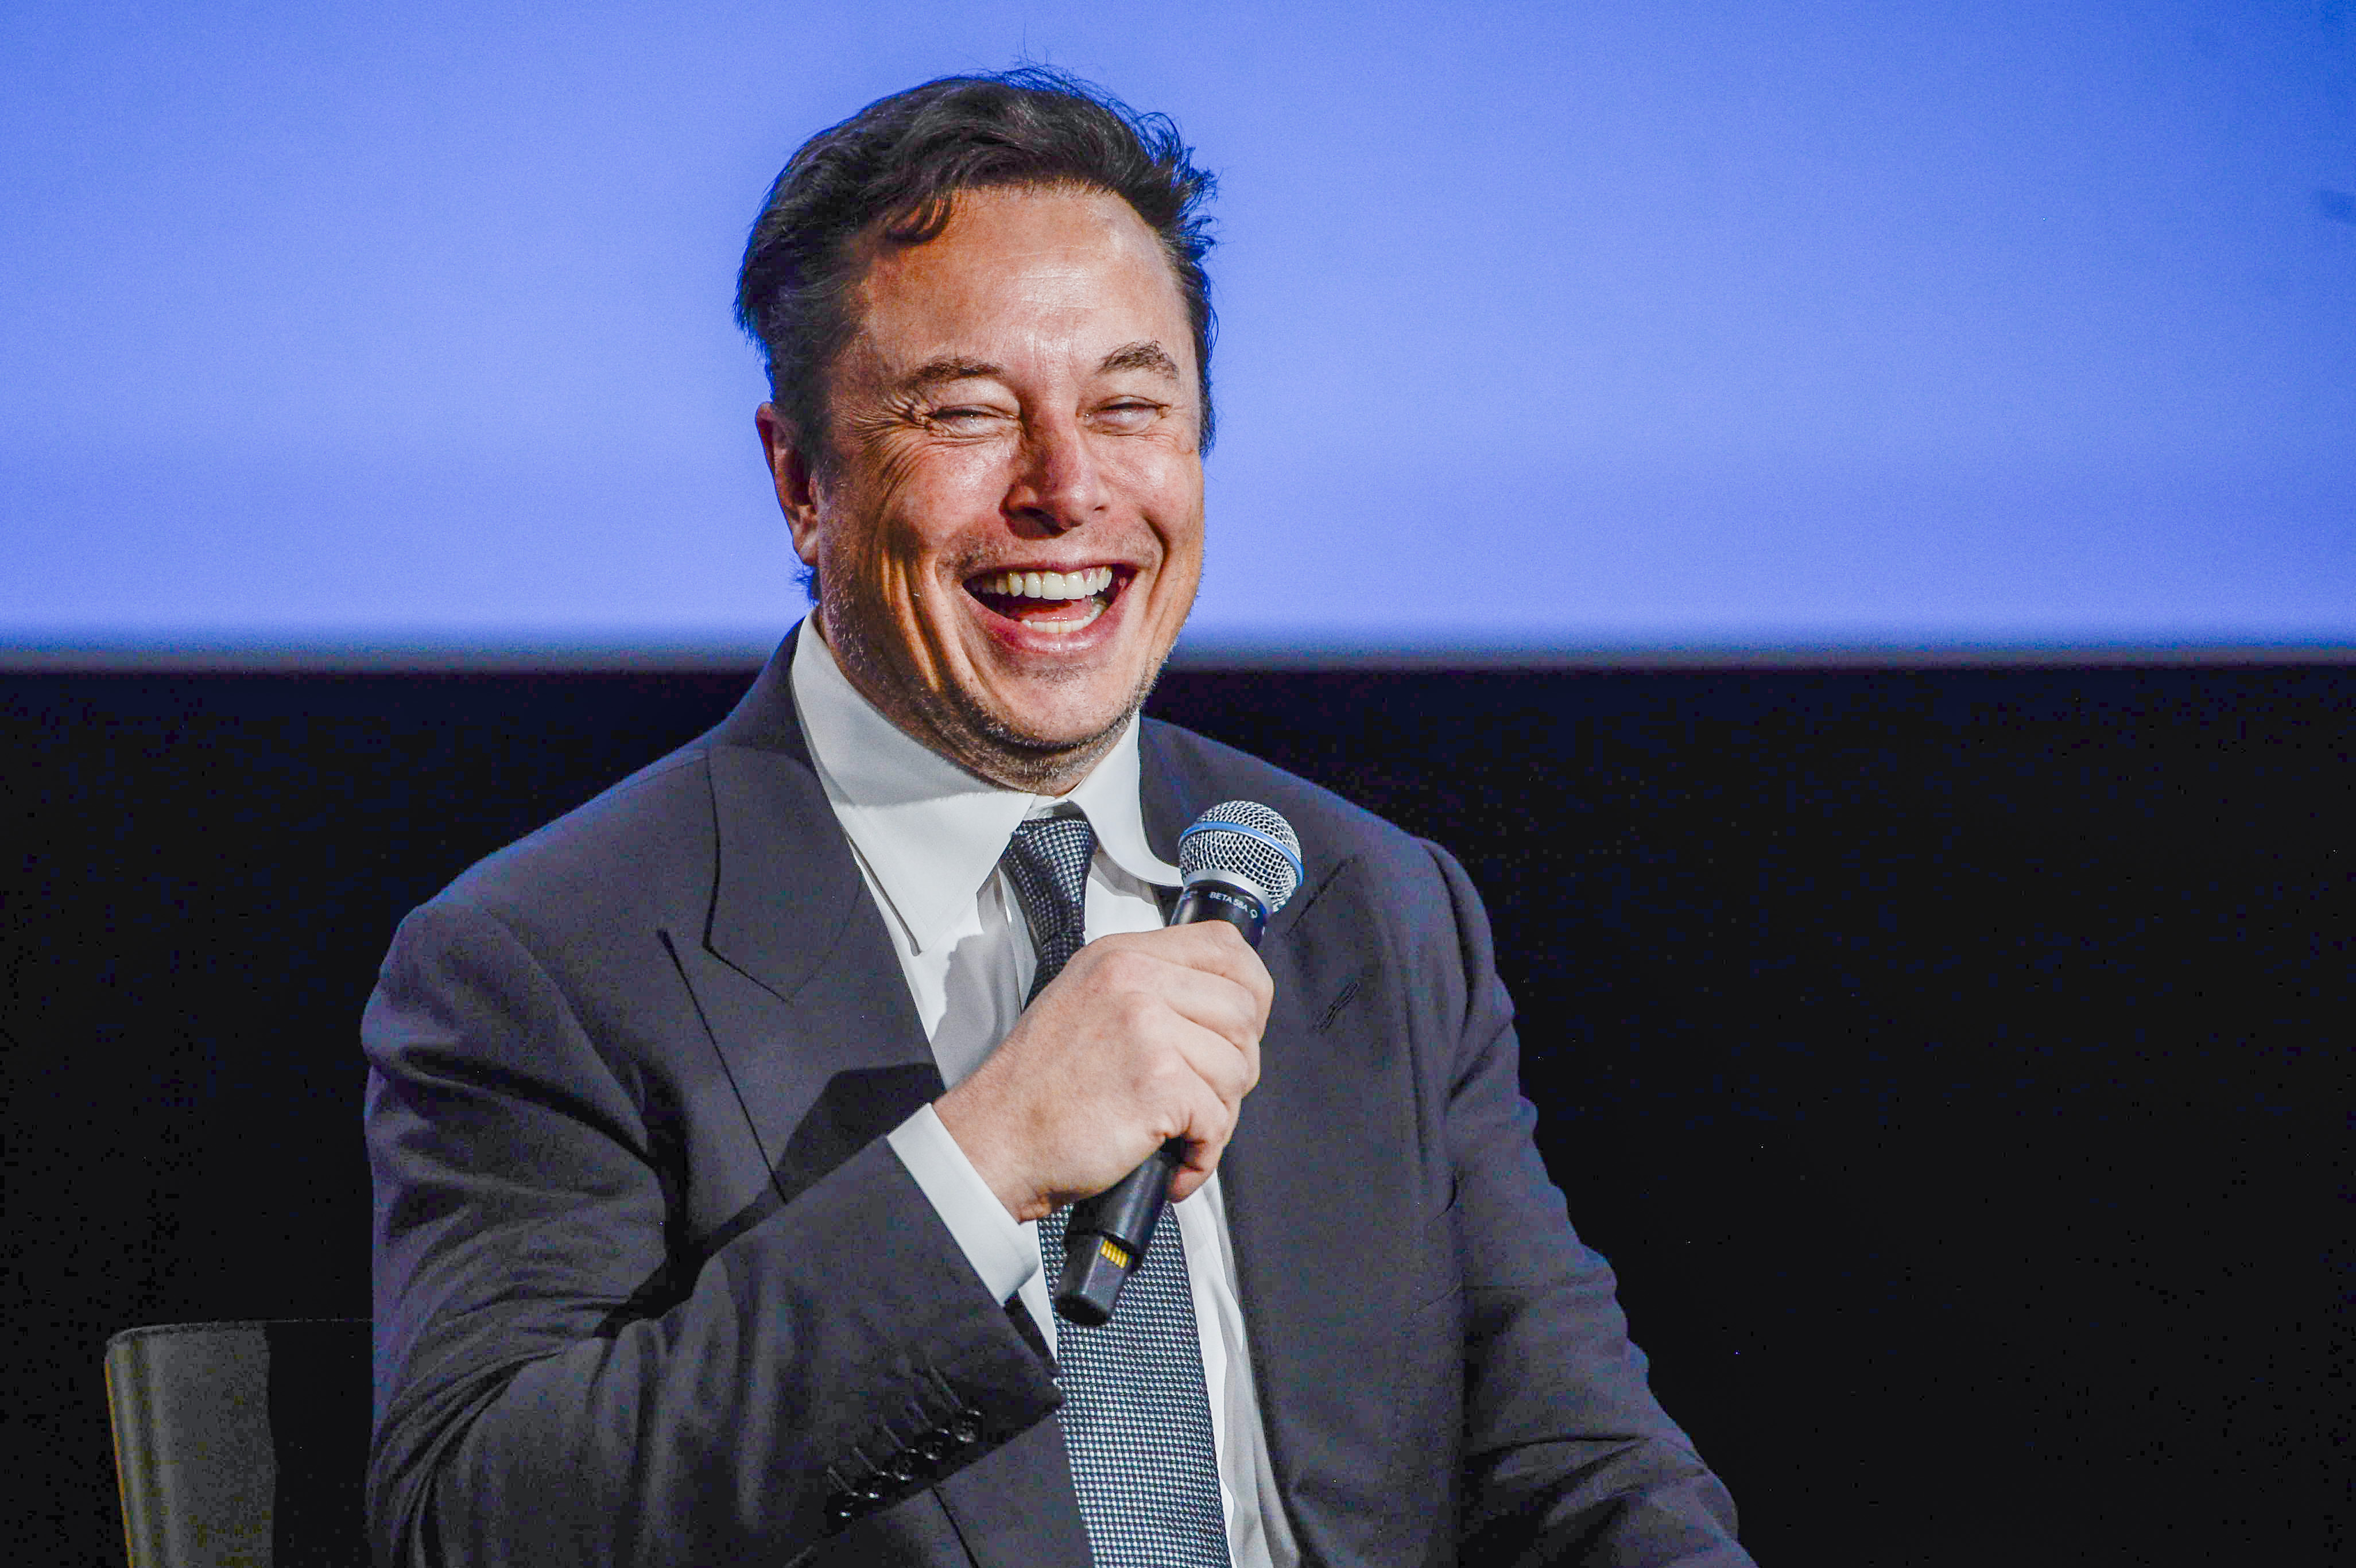 El fundador de Tesla, Elon Musk, habla en la feria ONS (Offshore Northern Seas) sobre energía sostenible en Stavanger, Noruega, el lunes 29 de agosto de 2022. (Carina Johansen/NTB Scanpix vía AP)